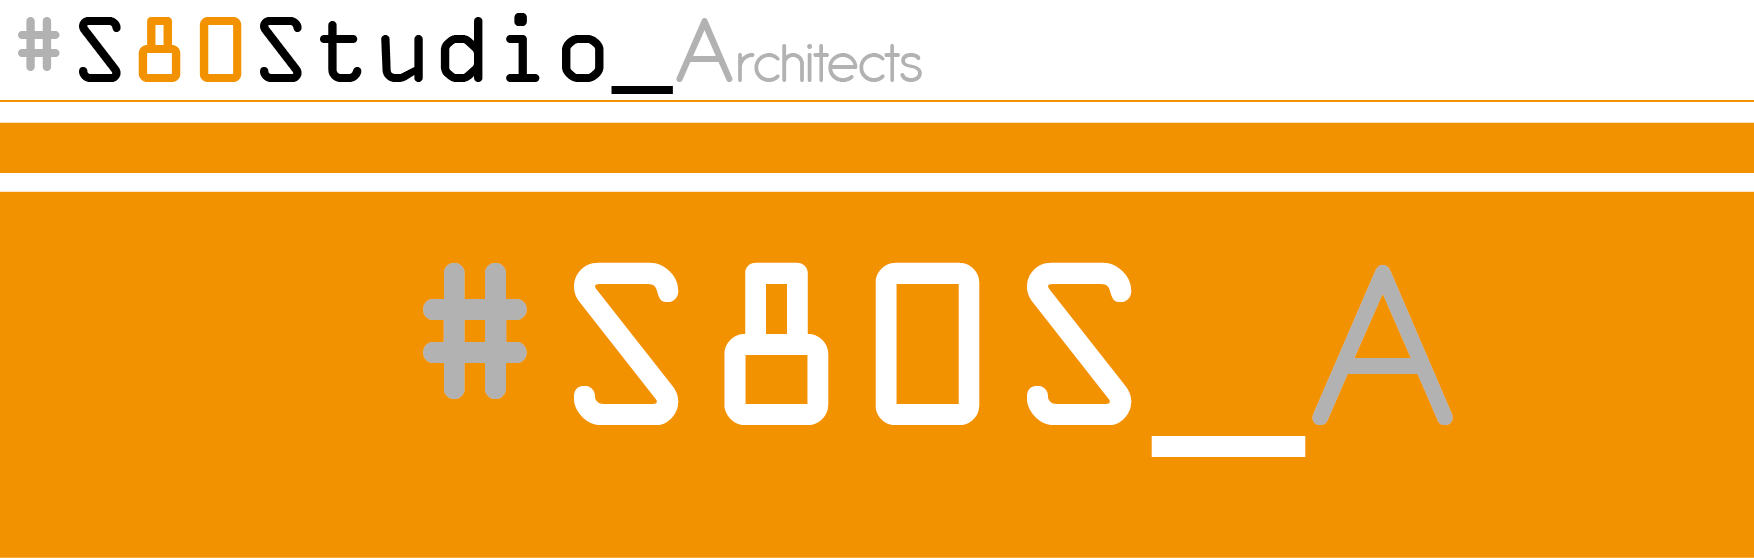 S80Studio_Architects